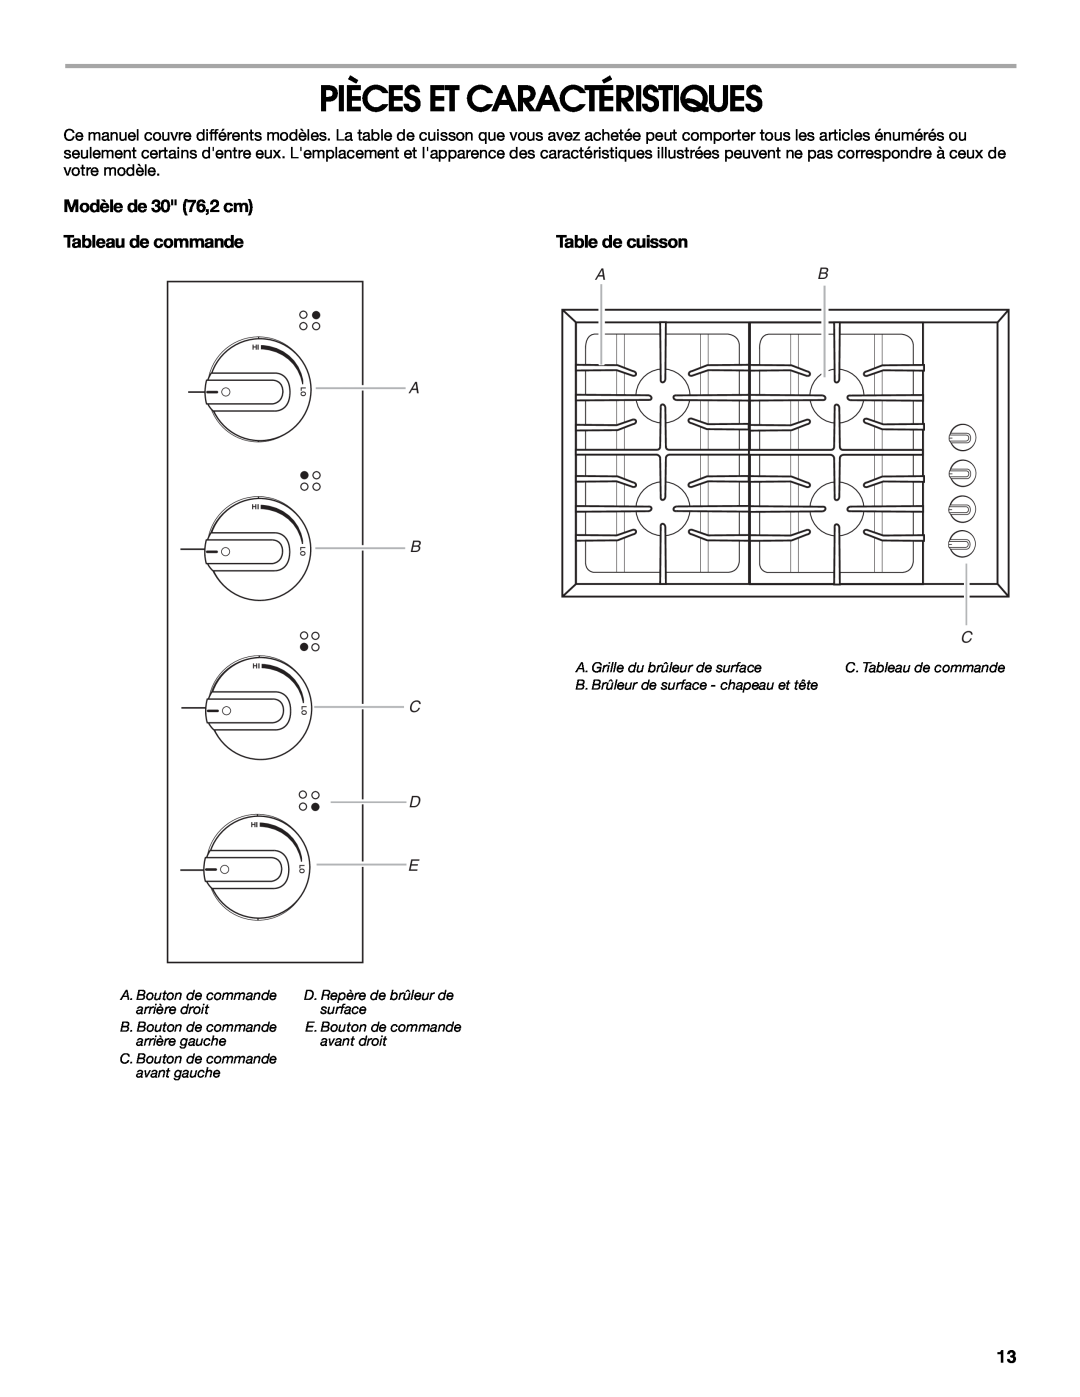 Maytag MGC8636WS, W10251095A manual Pièces Et Caractéristiques, Modèle de 30 76,2 cm Tableau de commande, Table de cuisson 